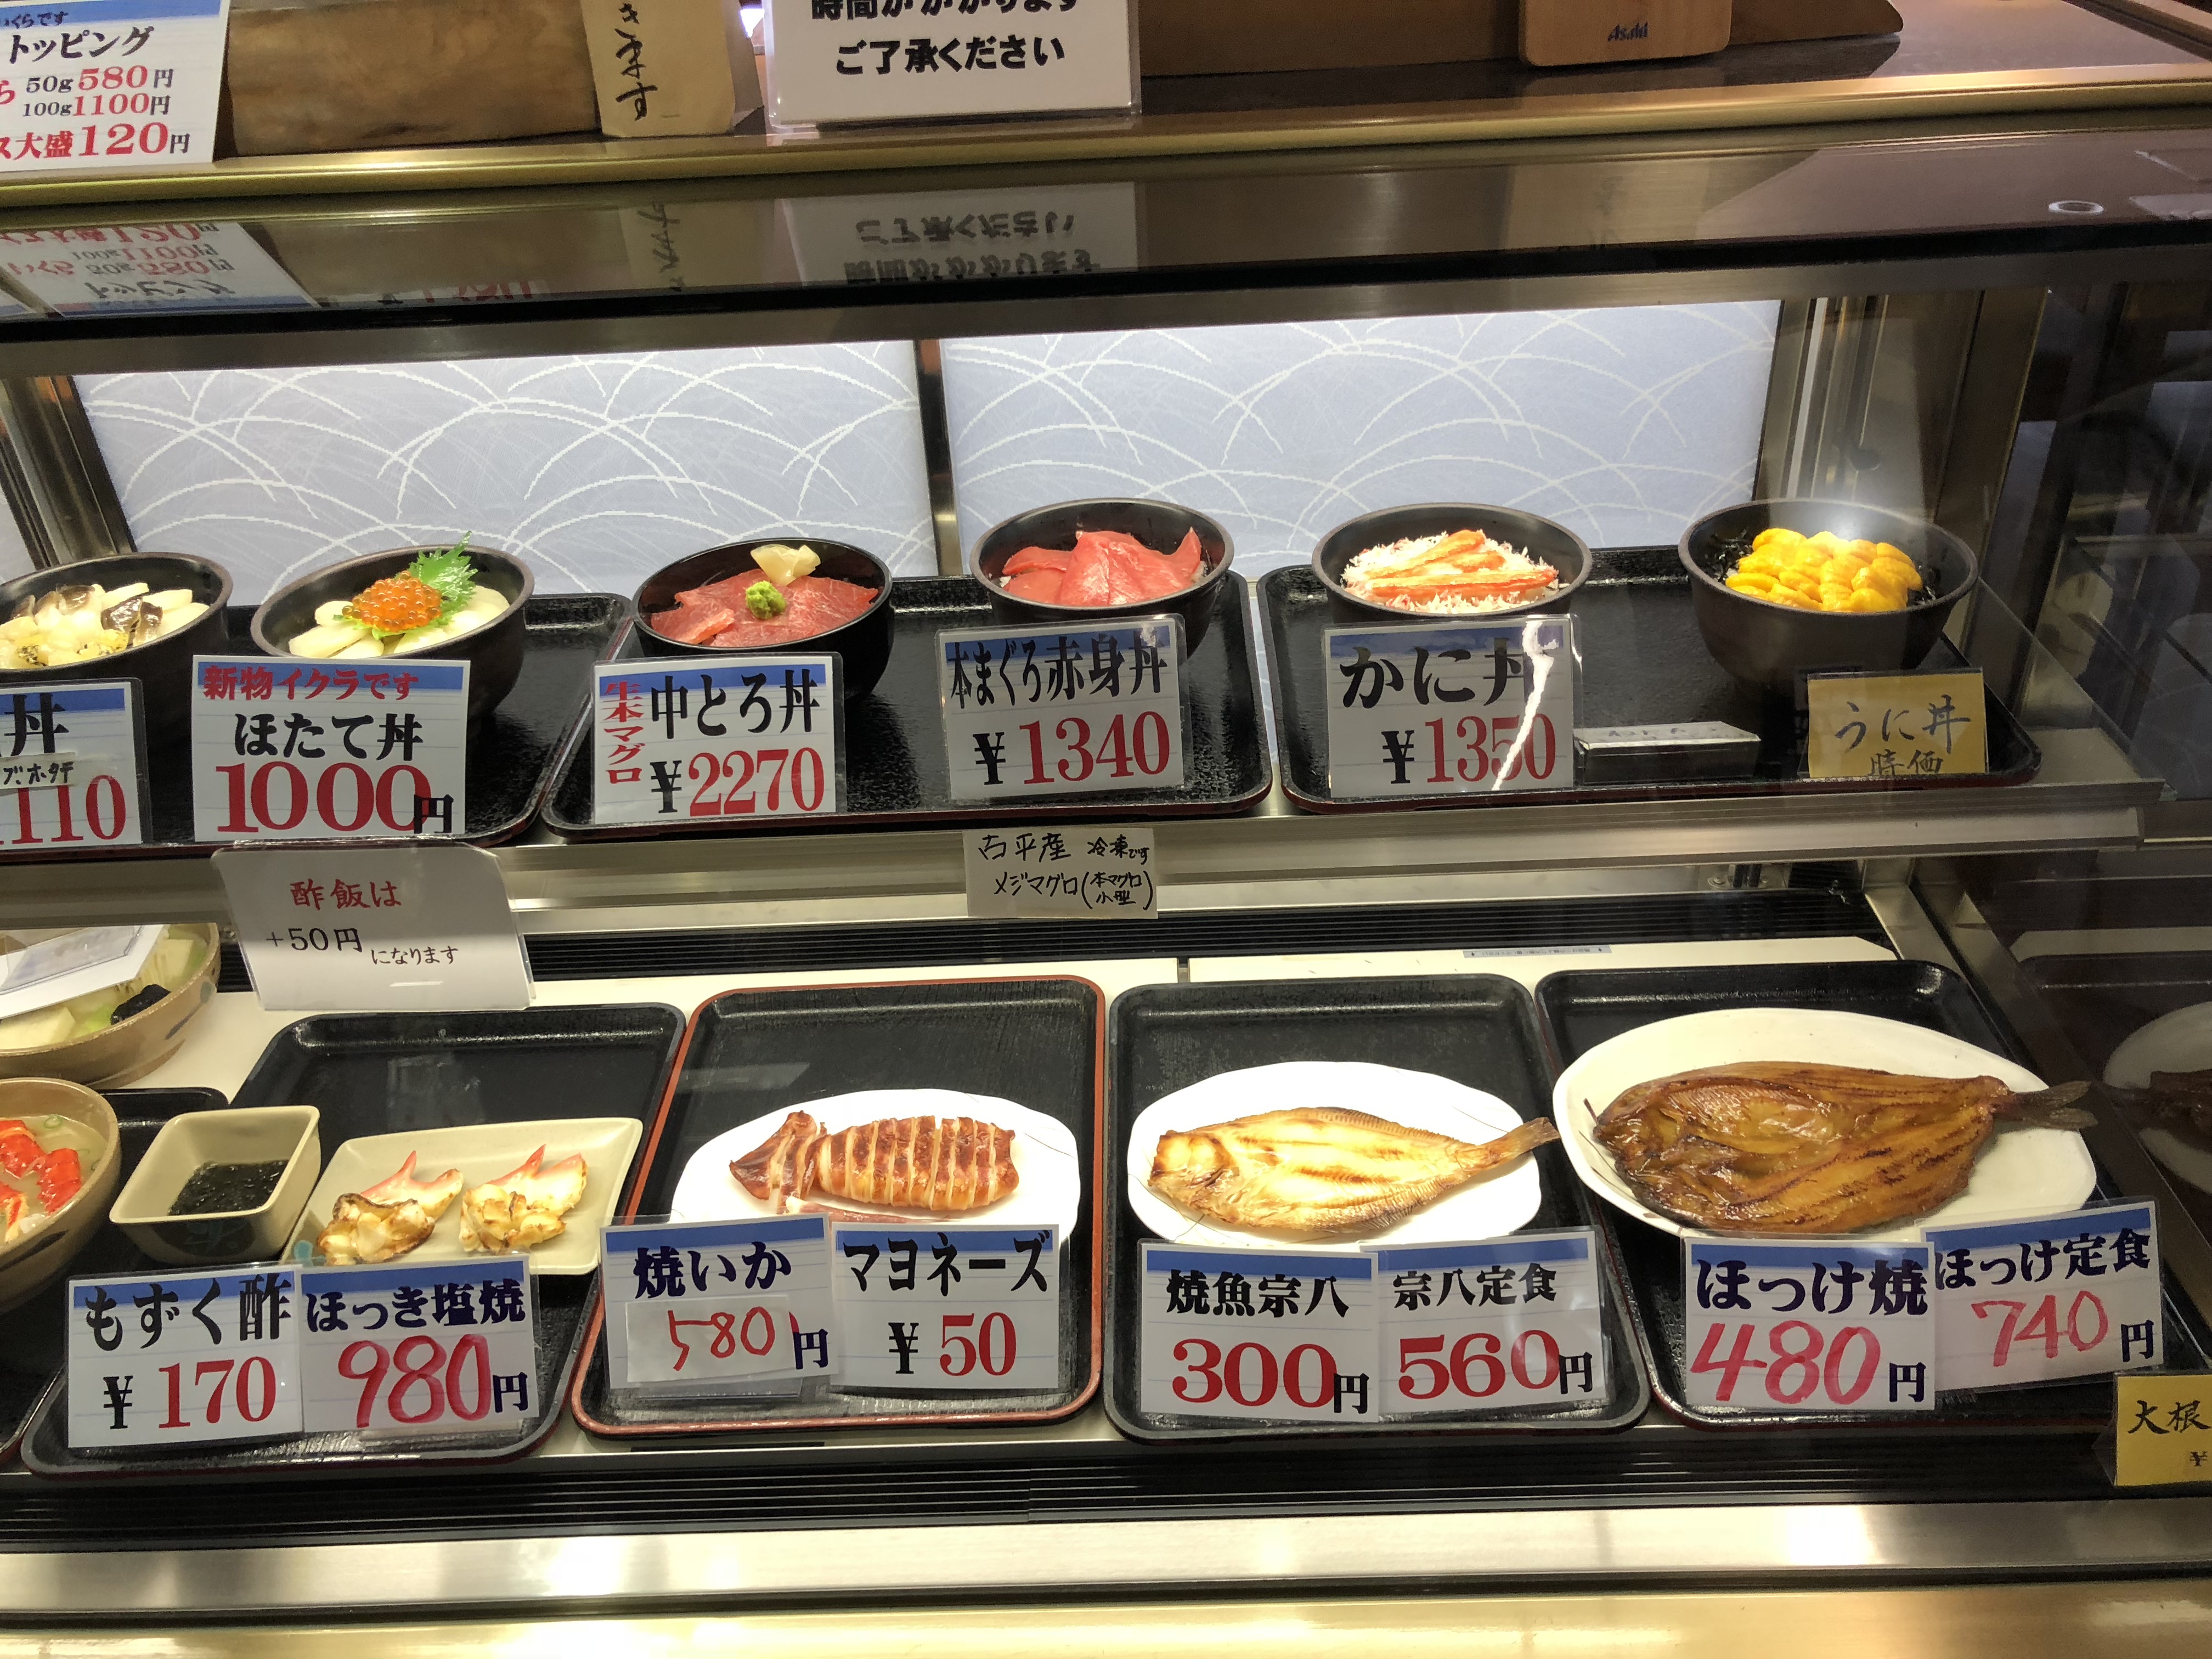 海鮮丼にイクラやウニ丼食べるなら余市の柿崎商店海鮮工房がおすすめ 道産子コスケの北海道を楽しむブログ